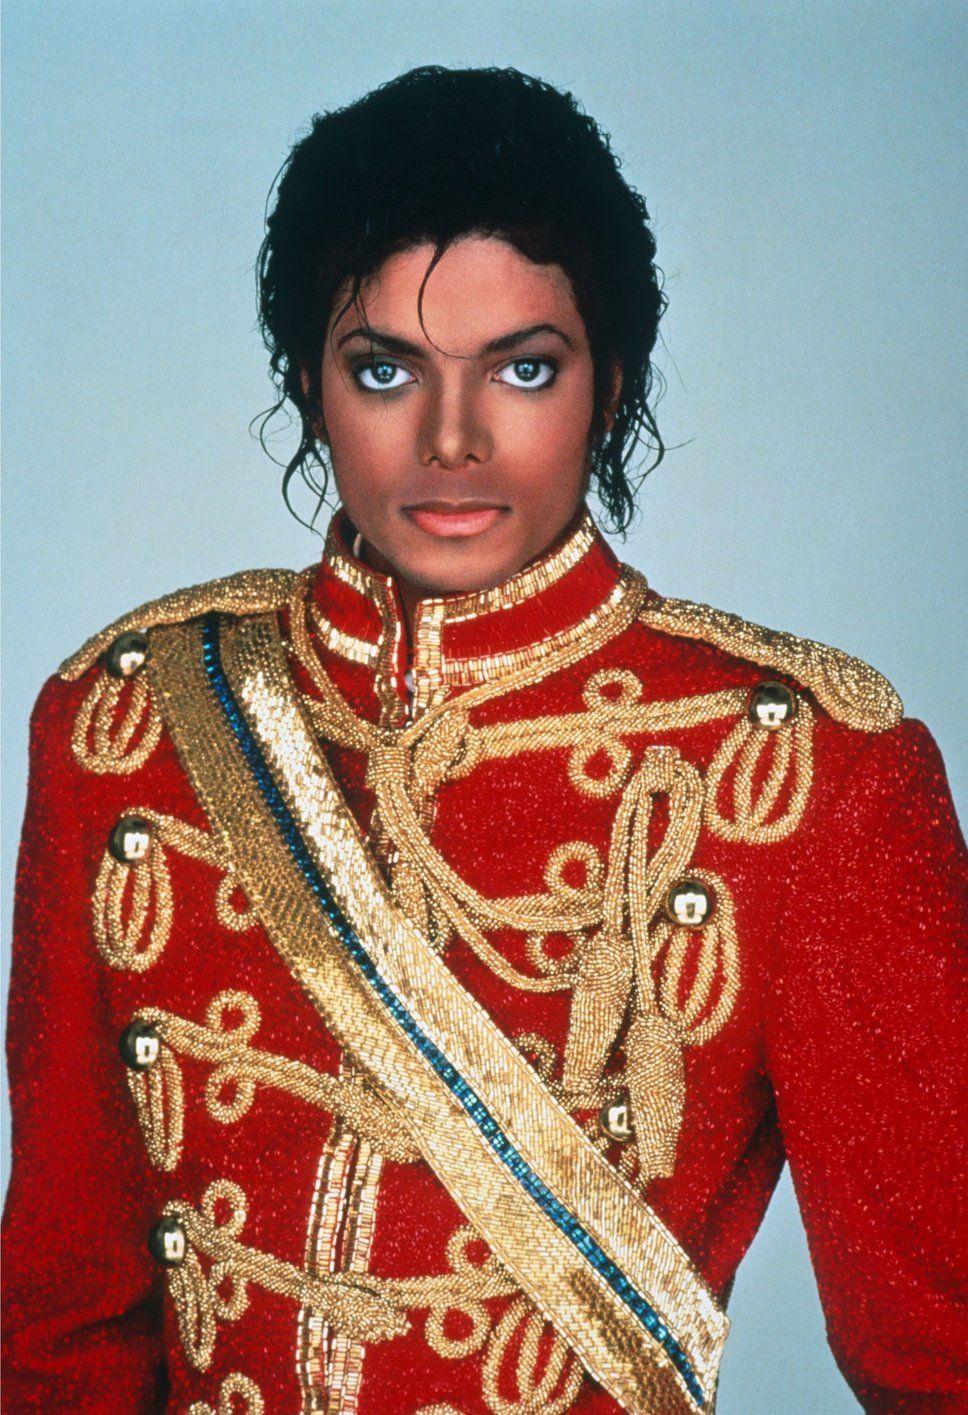 Michael Jackson en costume de dompteur. michael J